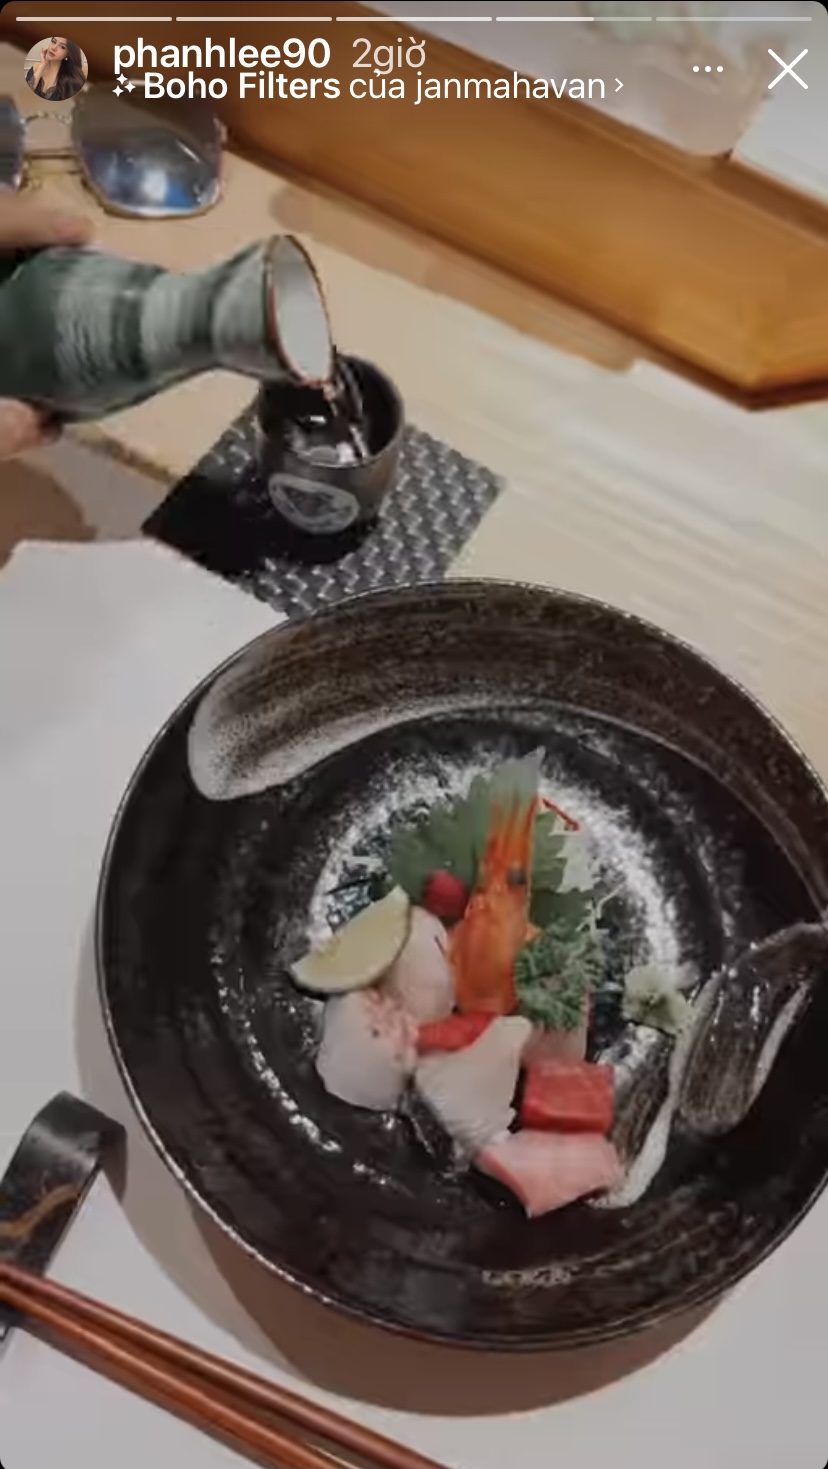 Phanh Lee hôm nay khoe bữa đồ Nhật trên trang cá nhân, từ sashimi tươi sống...